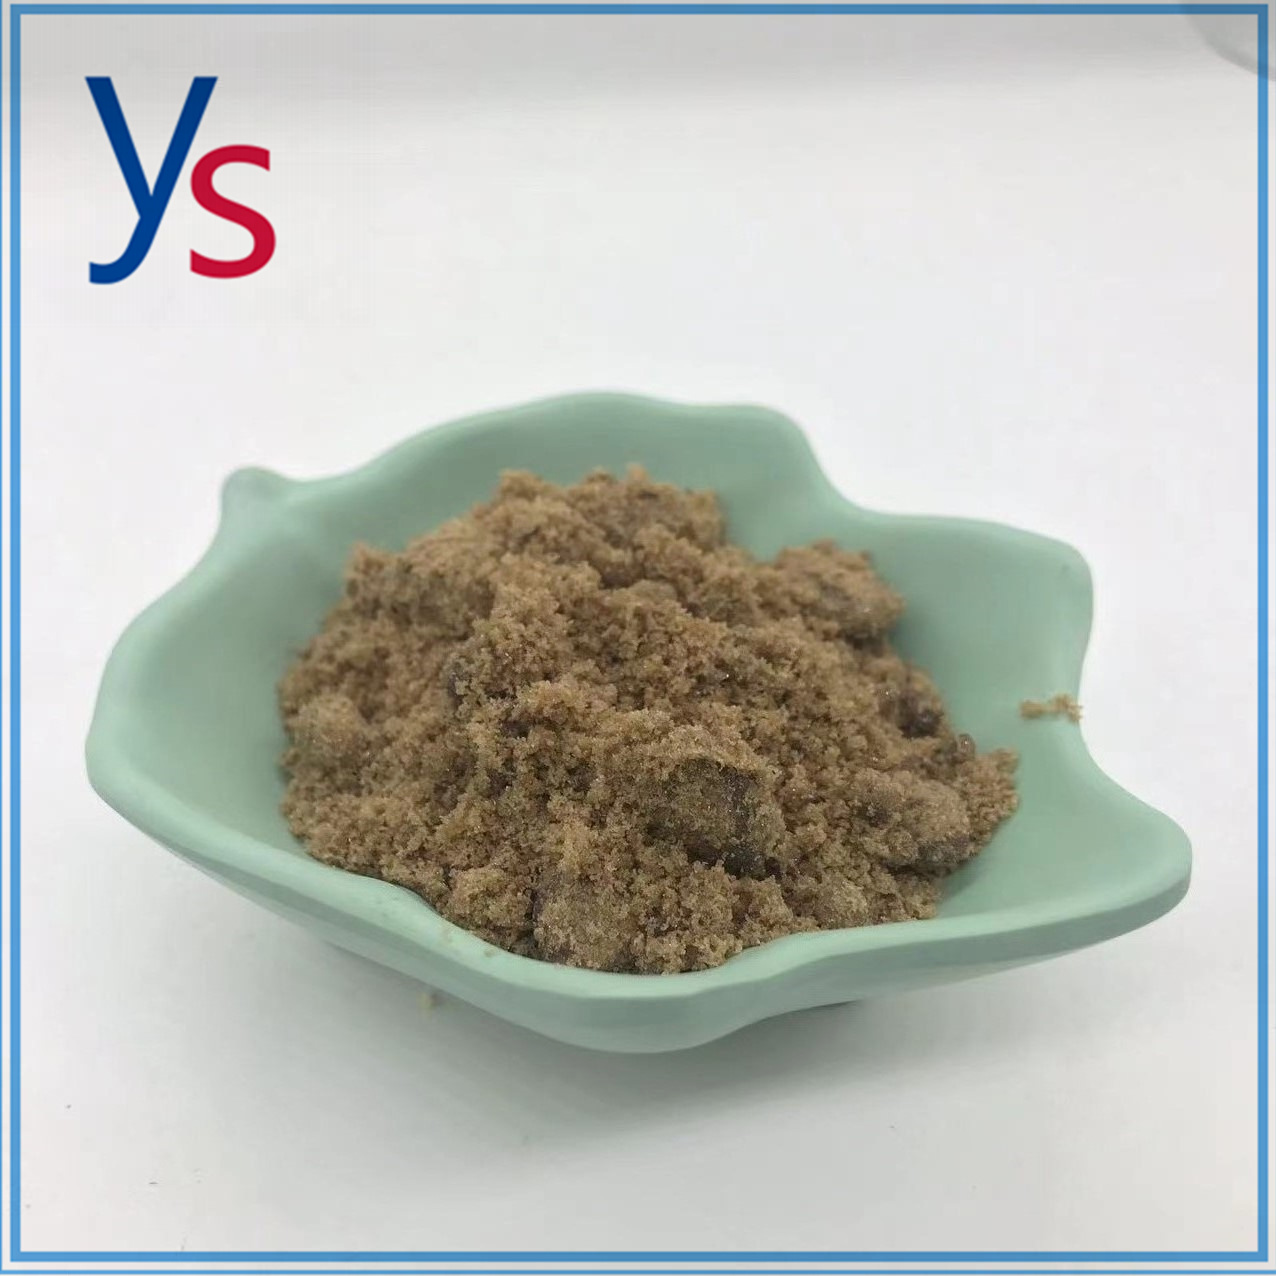 CAS 52190-28-0 2-broom-3',4'-(methyleendioxy)propiofenon